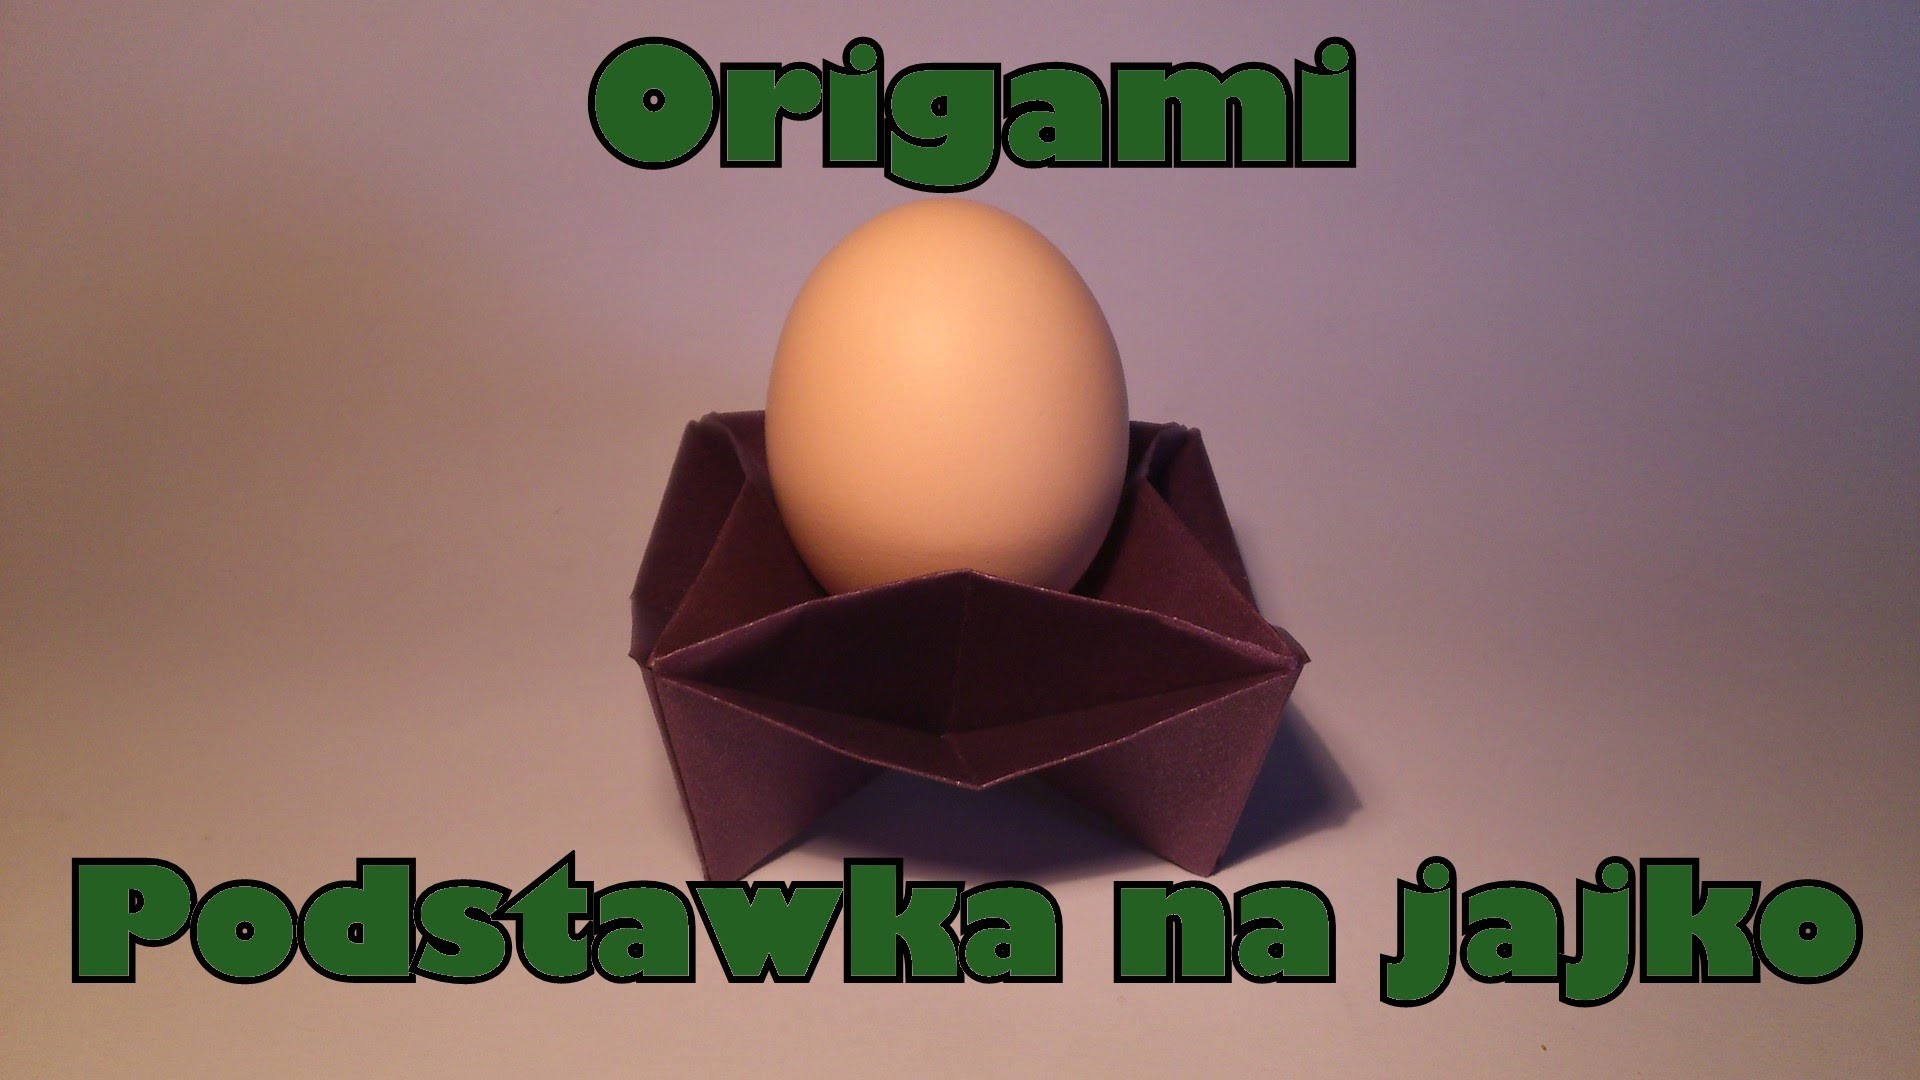 Origami - Podstawka na jajko